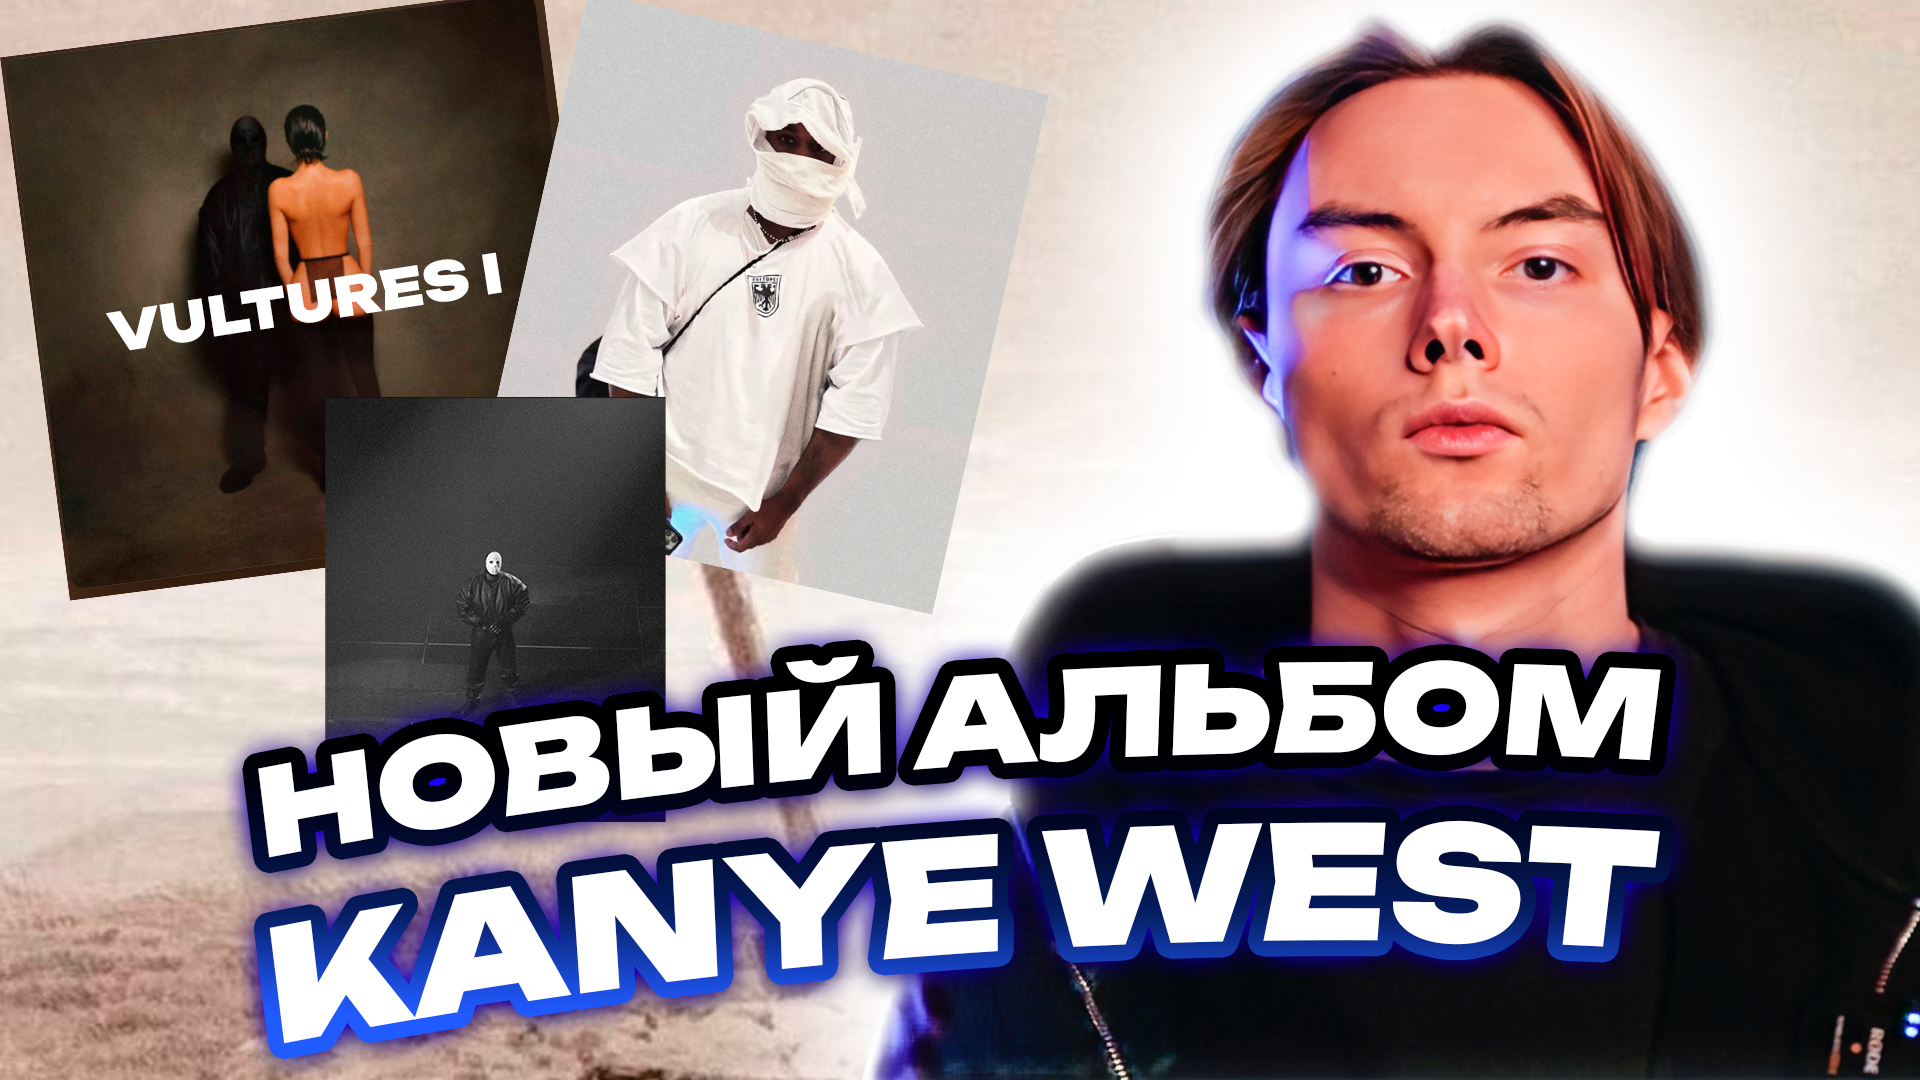 Обзор на альбом Kanye West - Vultures